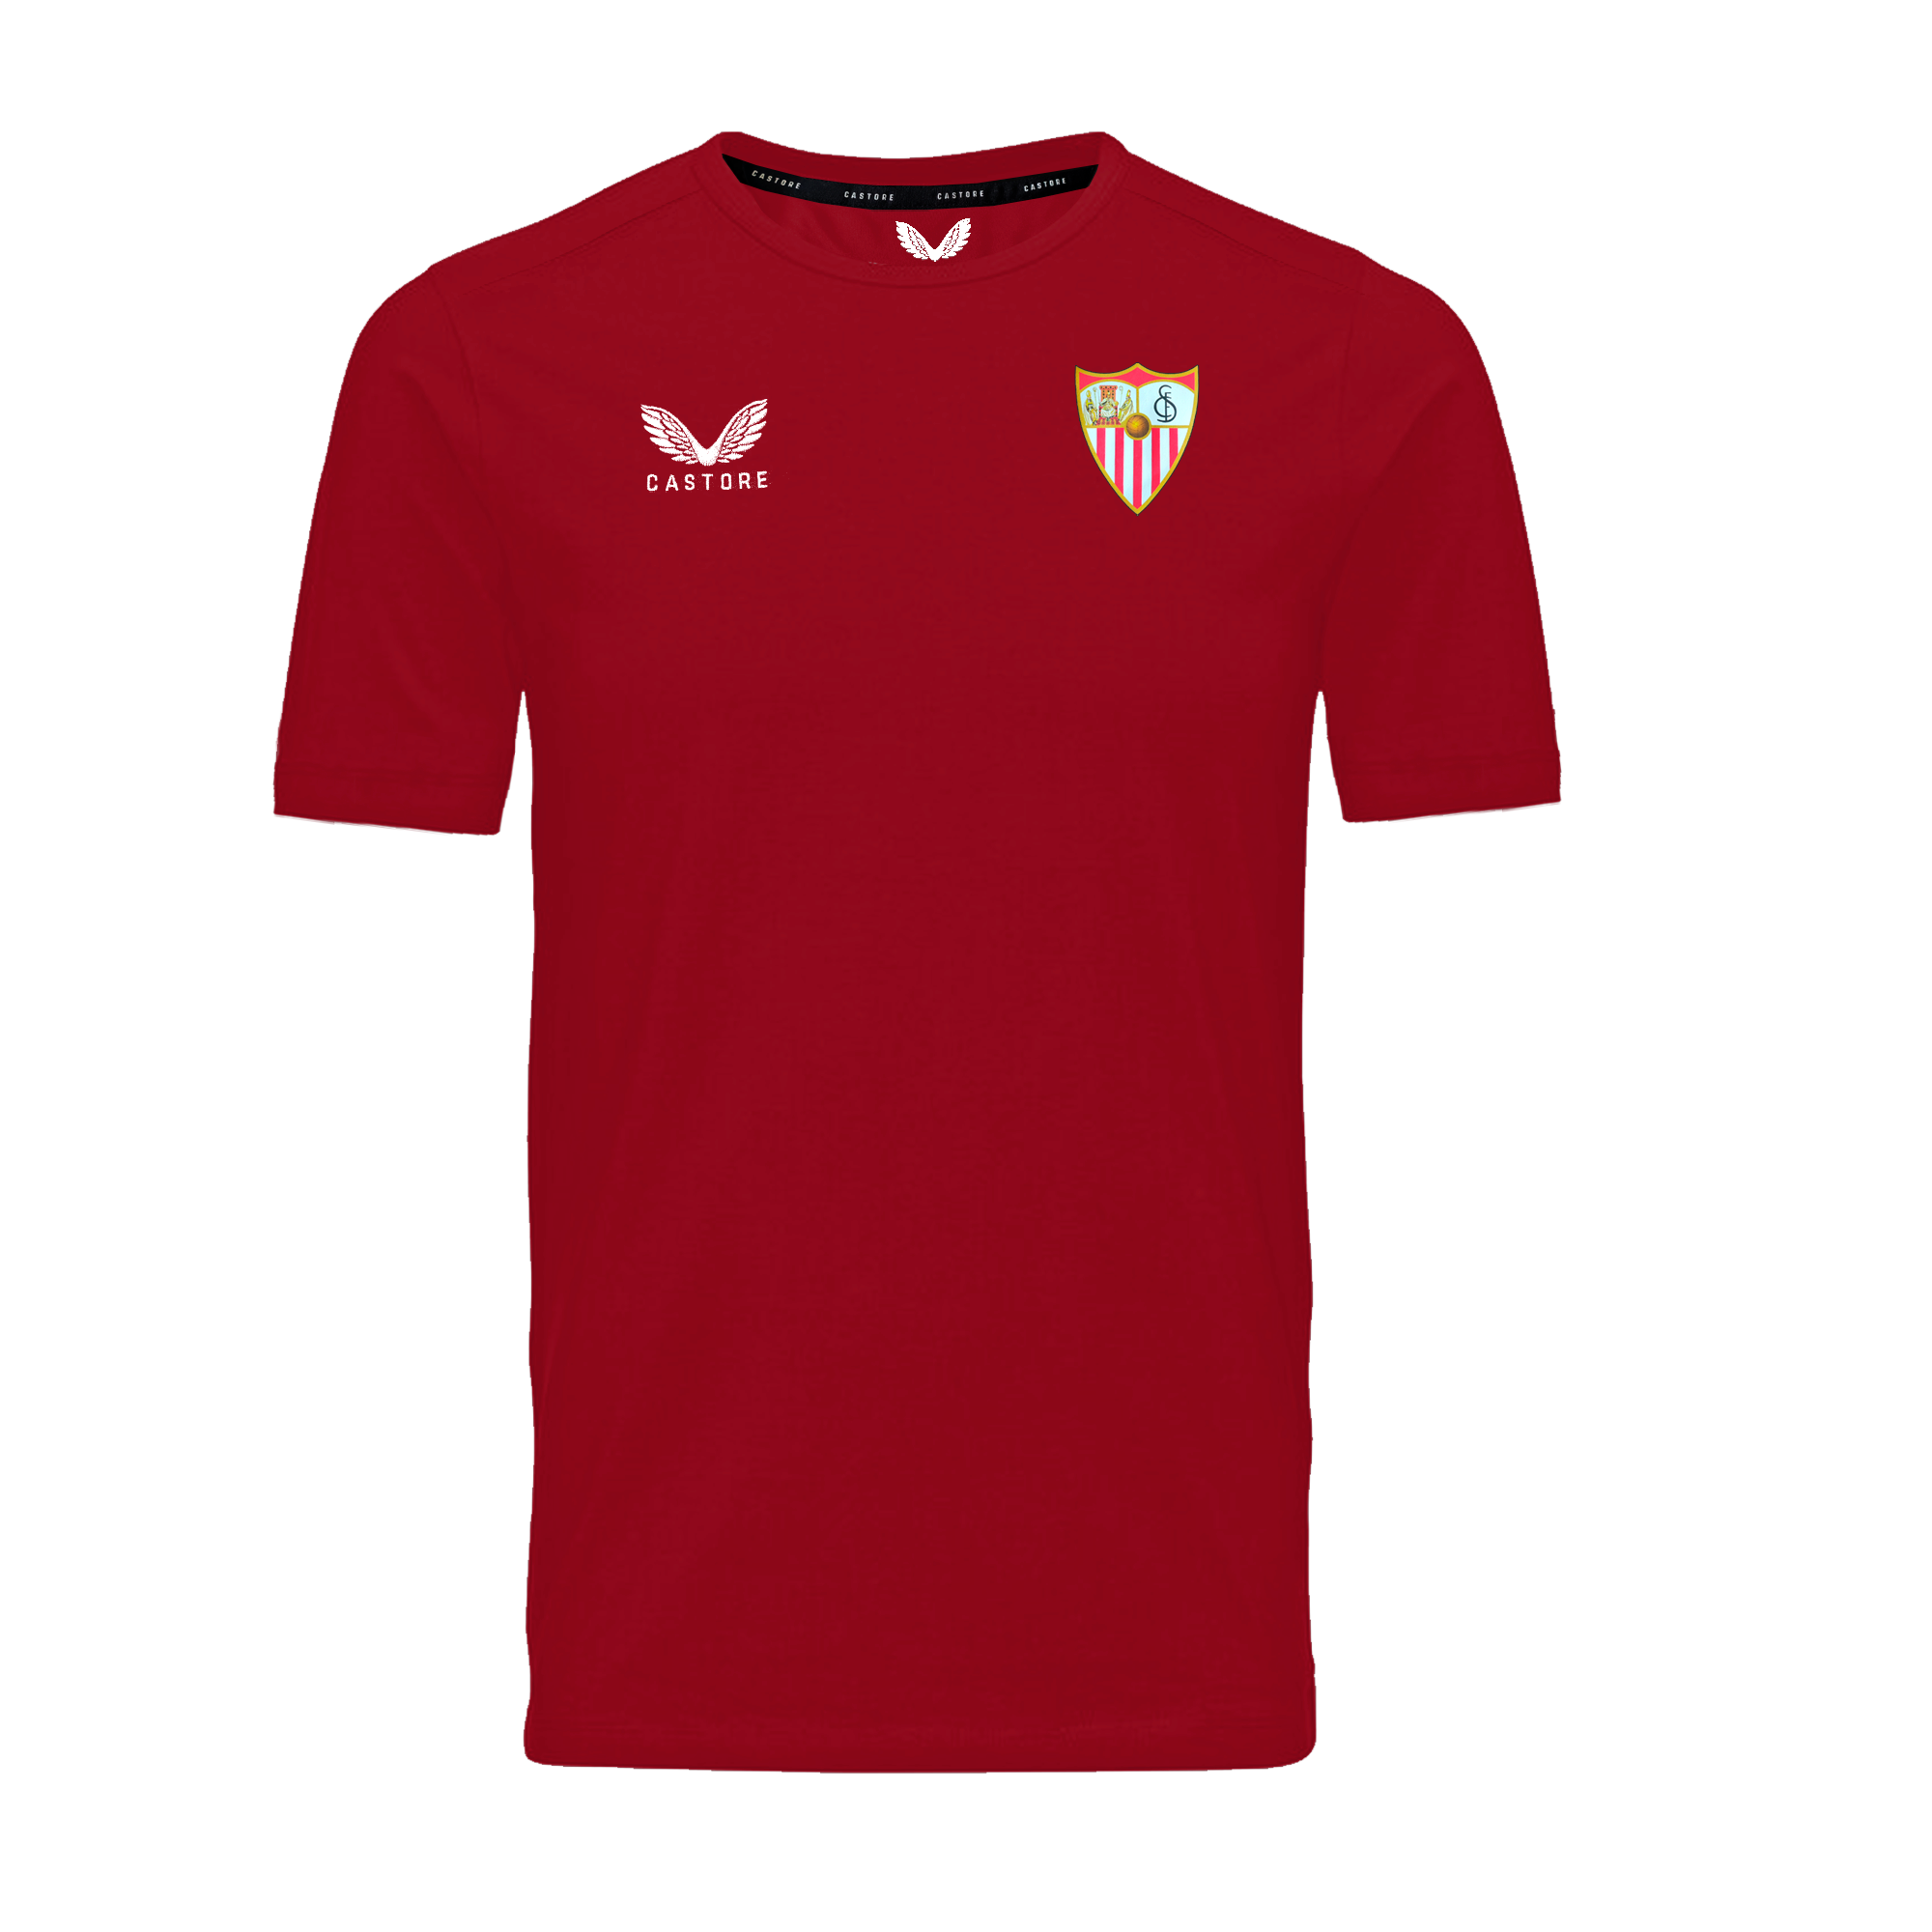 Camisetas Sevilla:Camisetas de Fútbol de Equipos Nacionales e